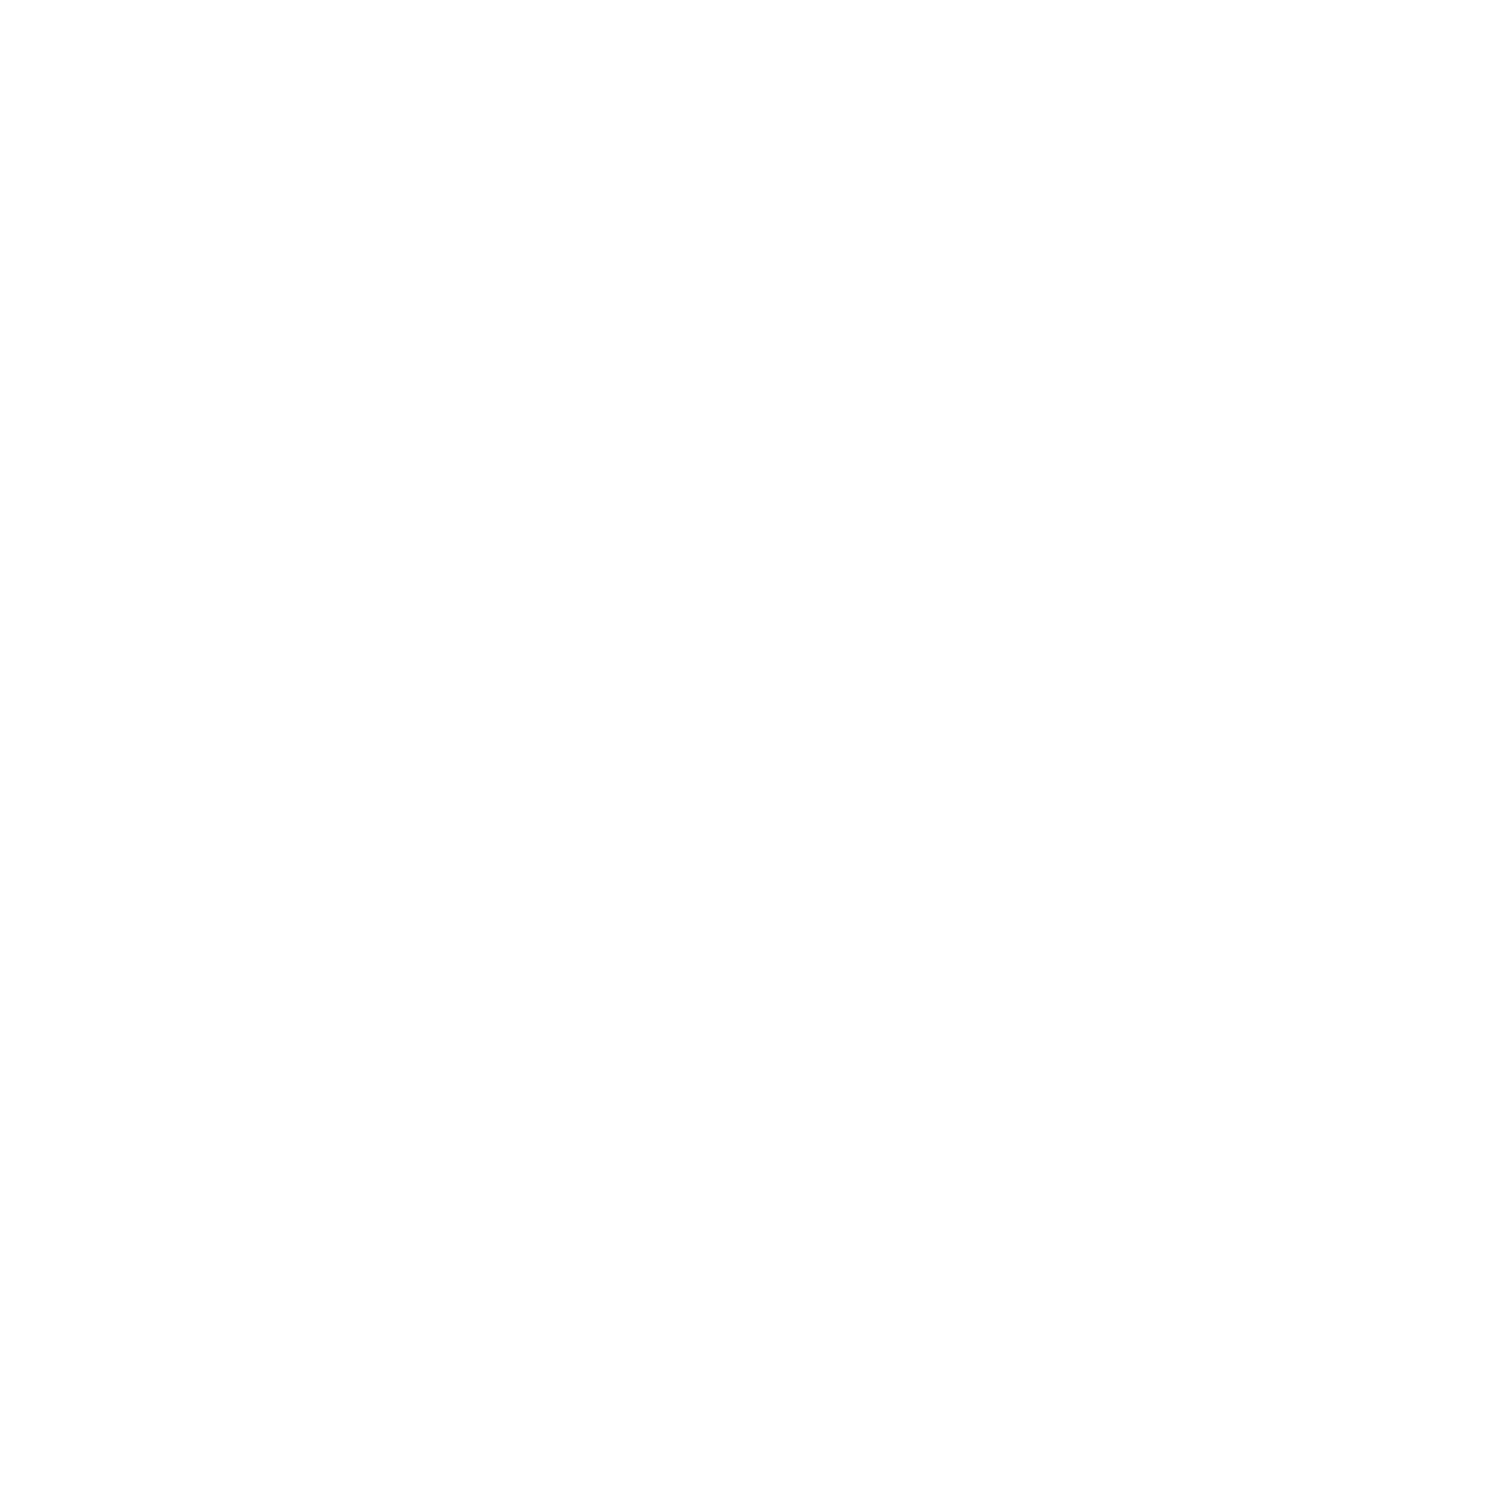 fleet pride people seal